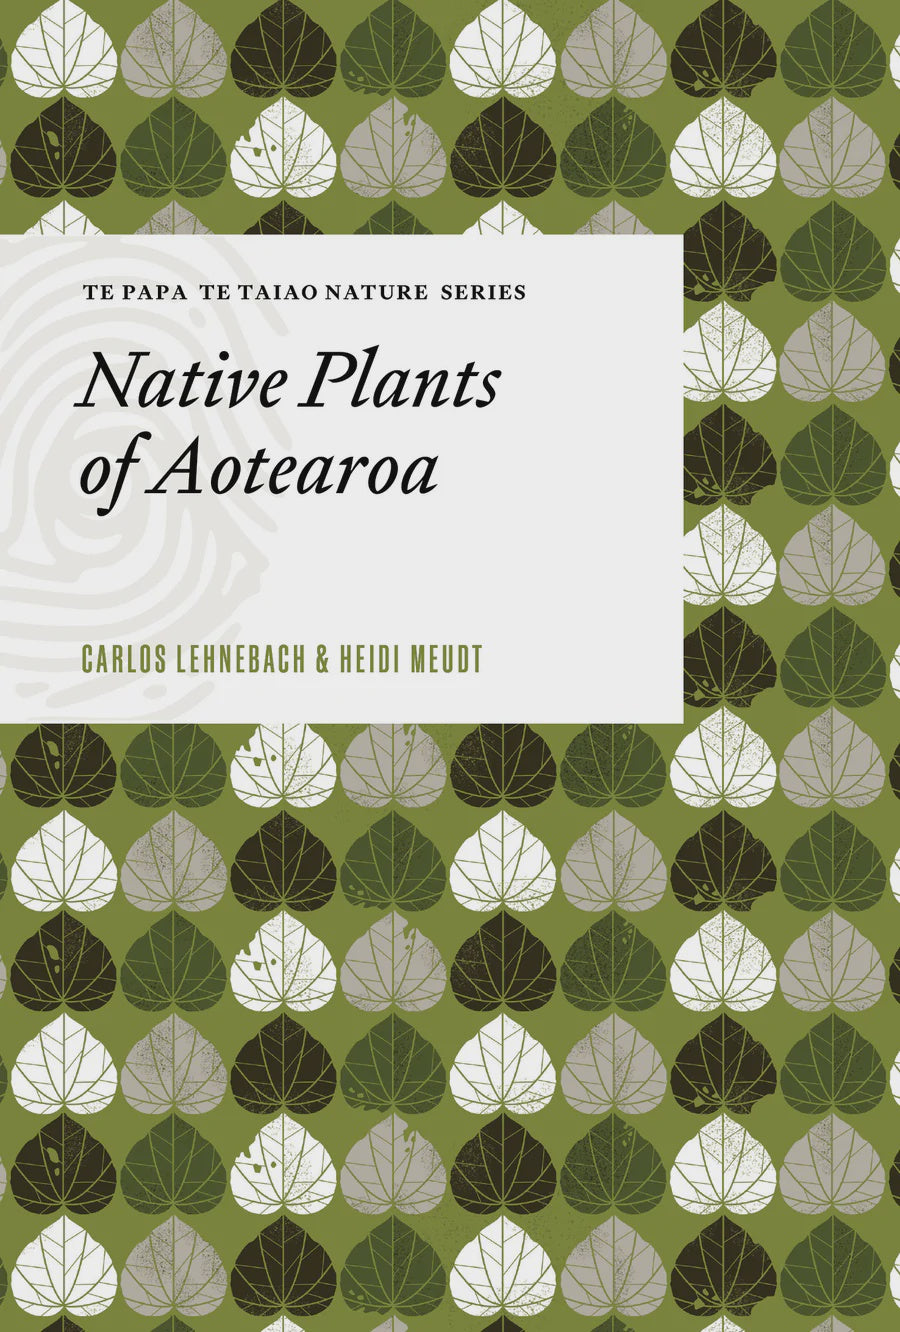 Te Papa Te Taiao Nature Series: Native Plants of Aotearoa